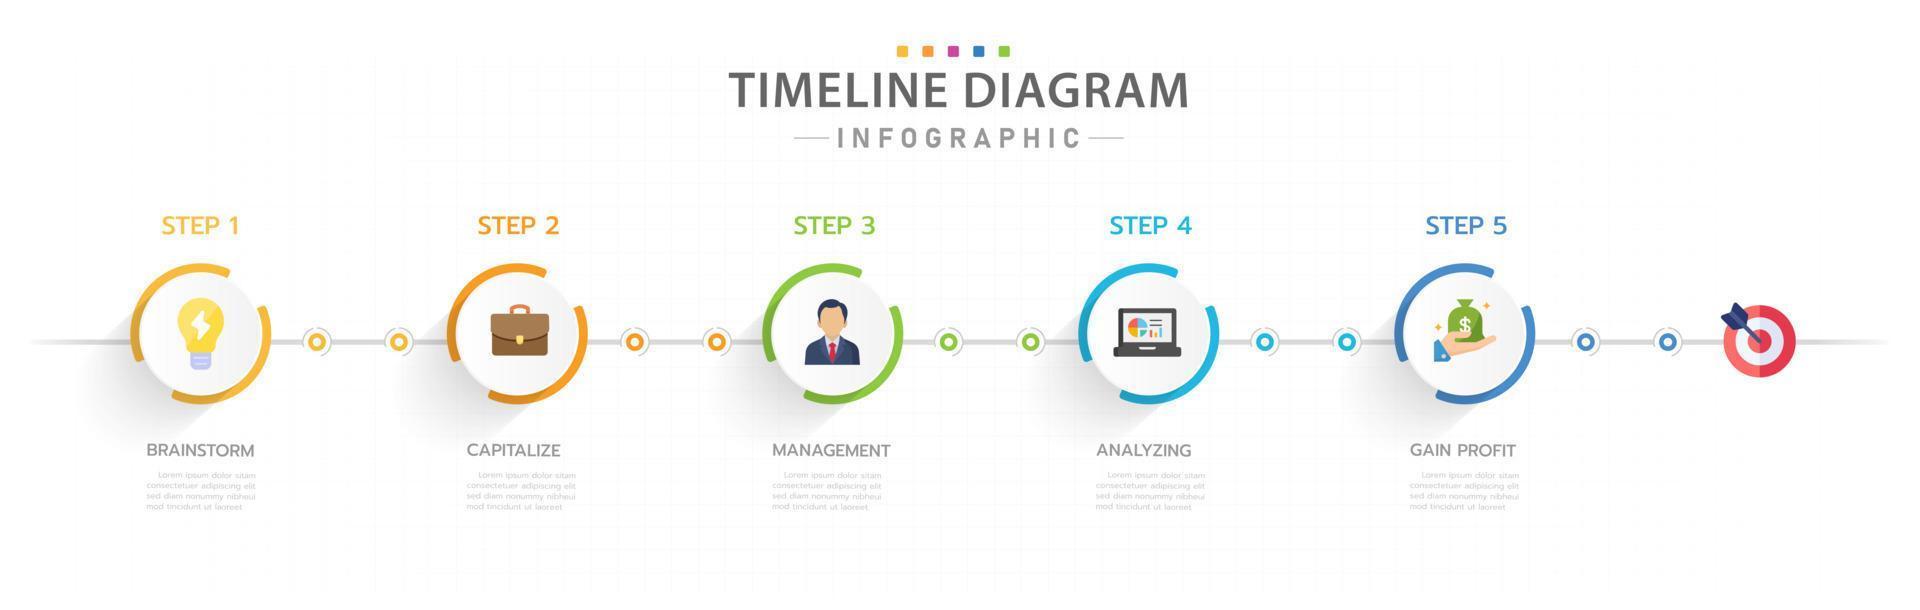 modèle d'infographie pour les entreprises. Diagramme de chronologie moderne en 5 étapes avec des sujets de cercle de titre, infographie vectorielle de présentation. vecteur